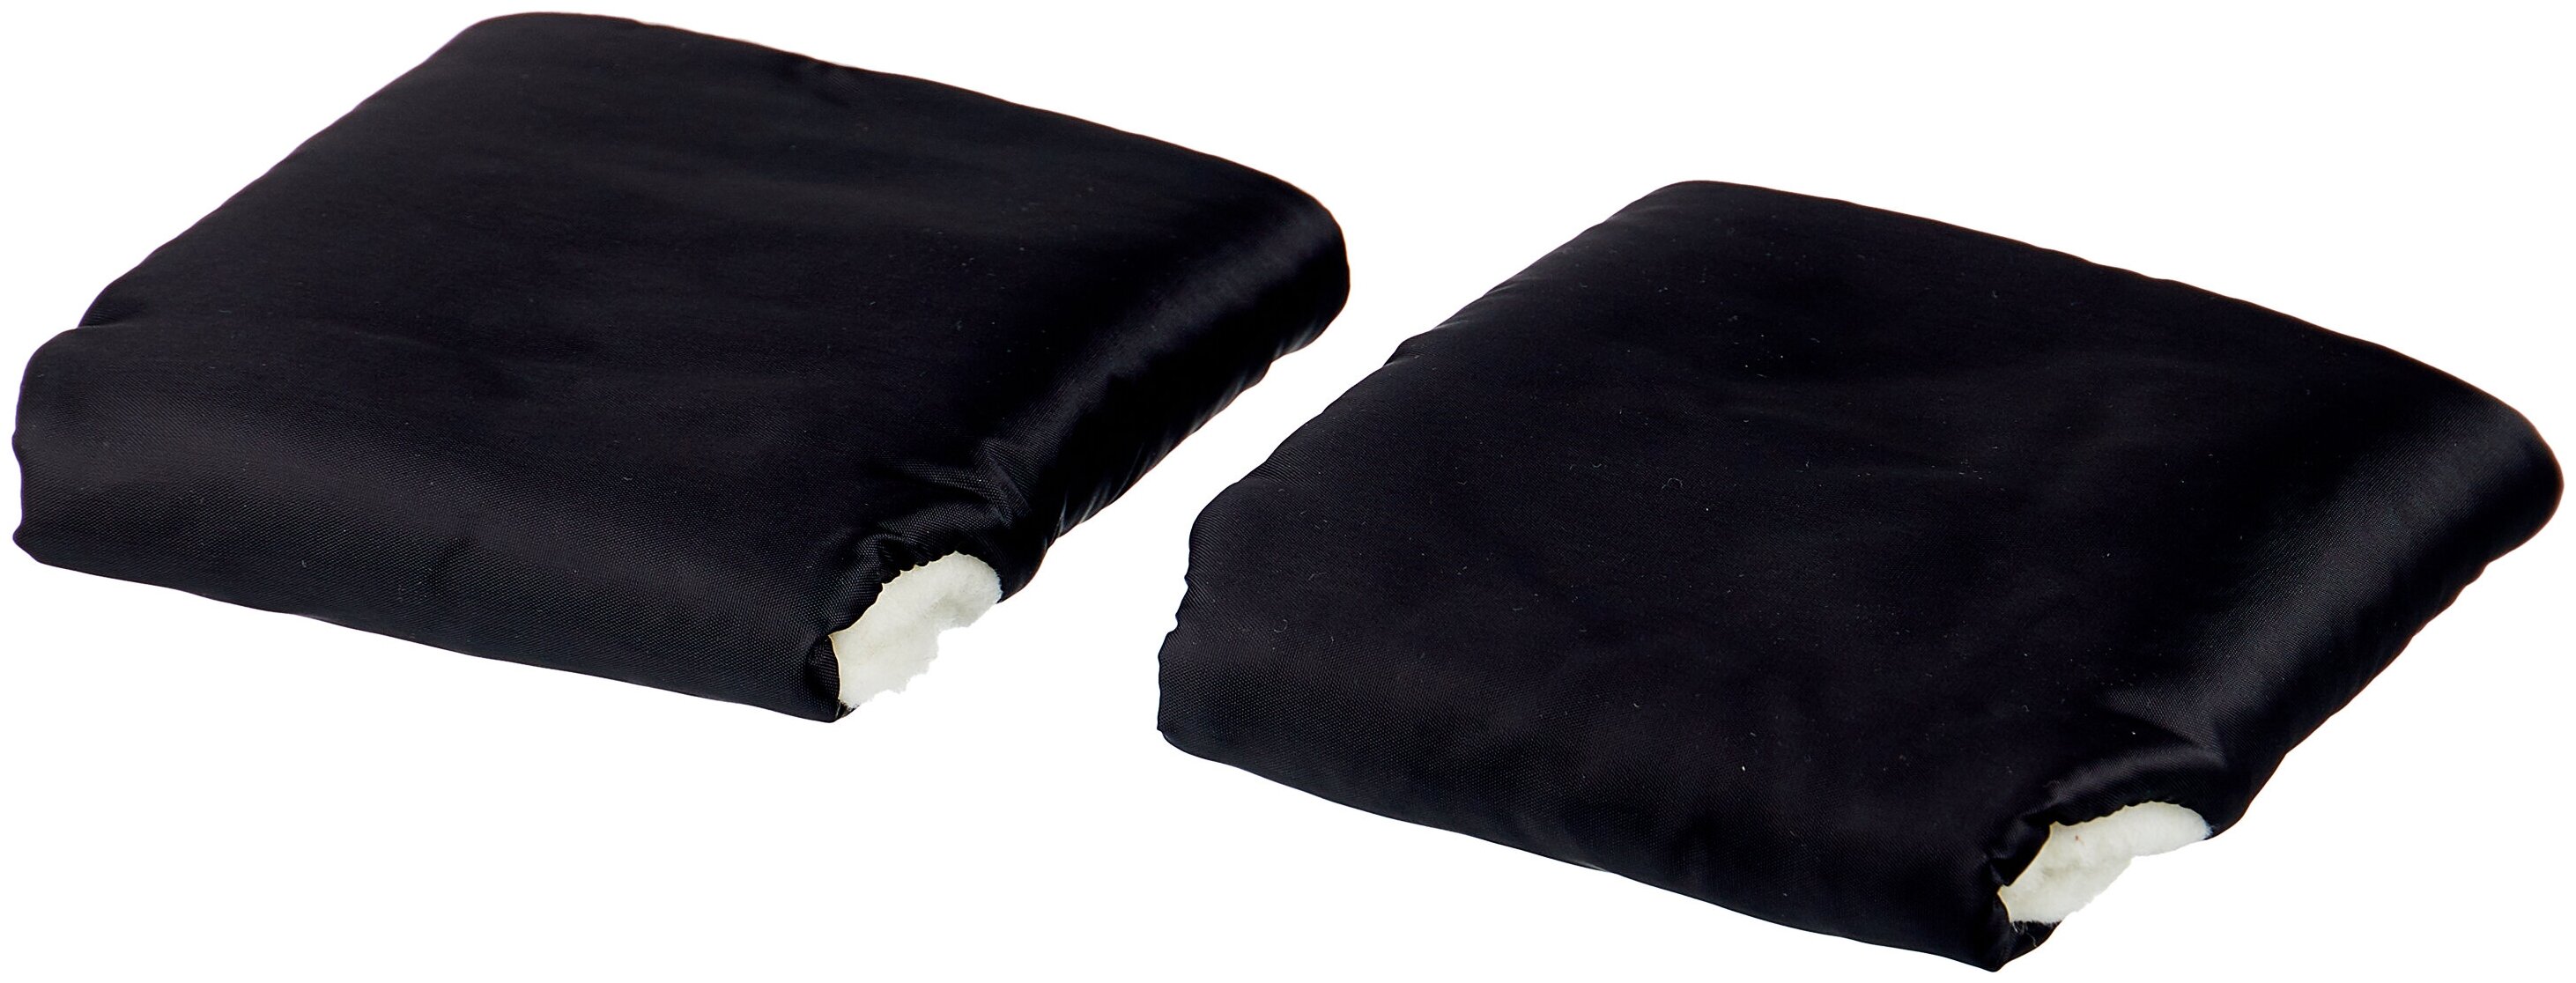 Муфта - рукавички для рук на коляску Карапуз Арт.2681 Цвет: Чёрный